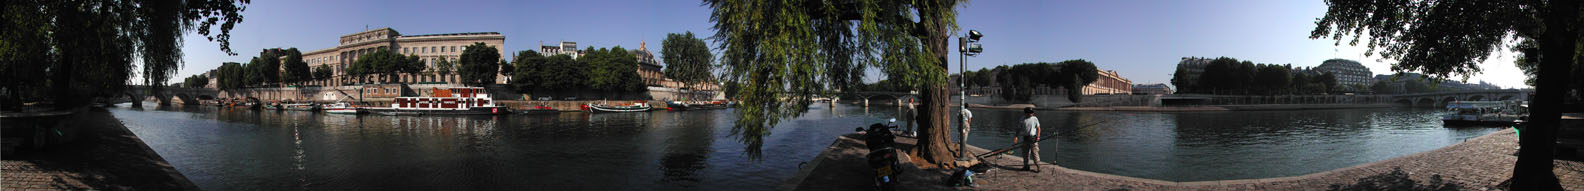 La Seine River